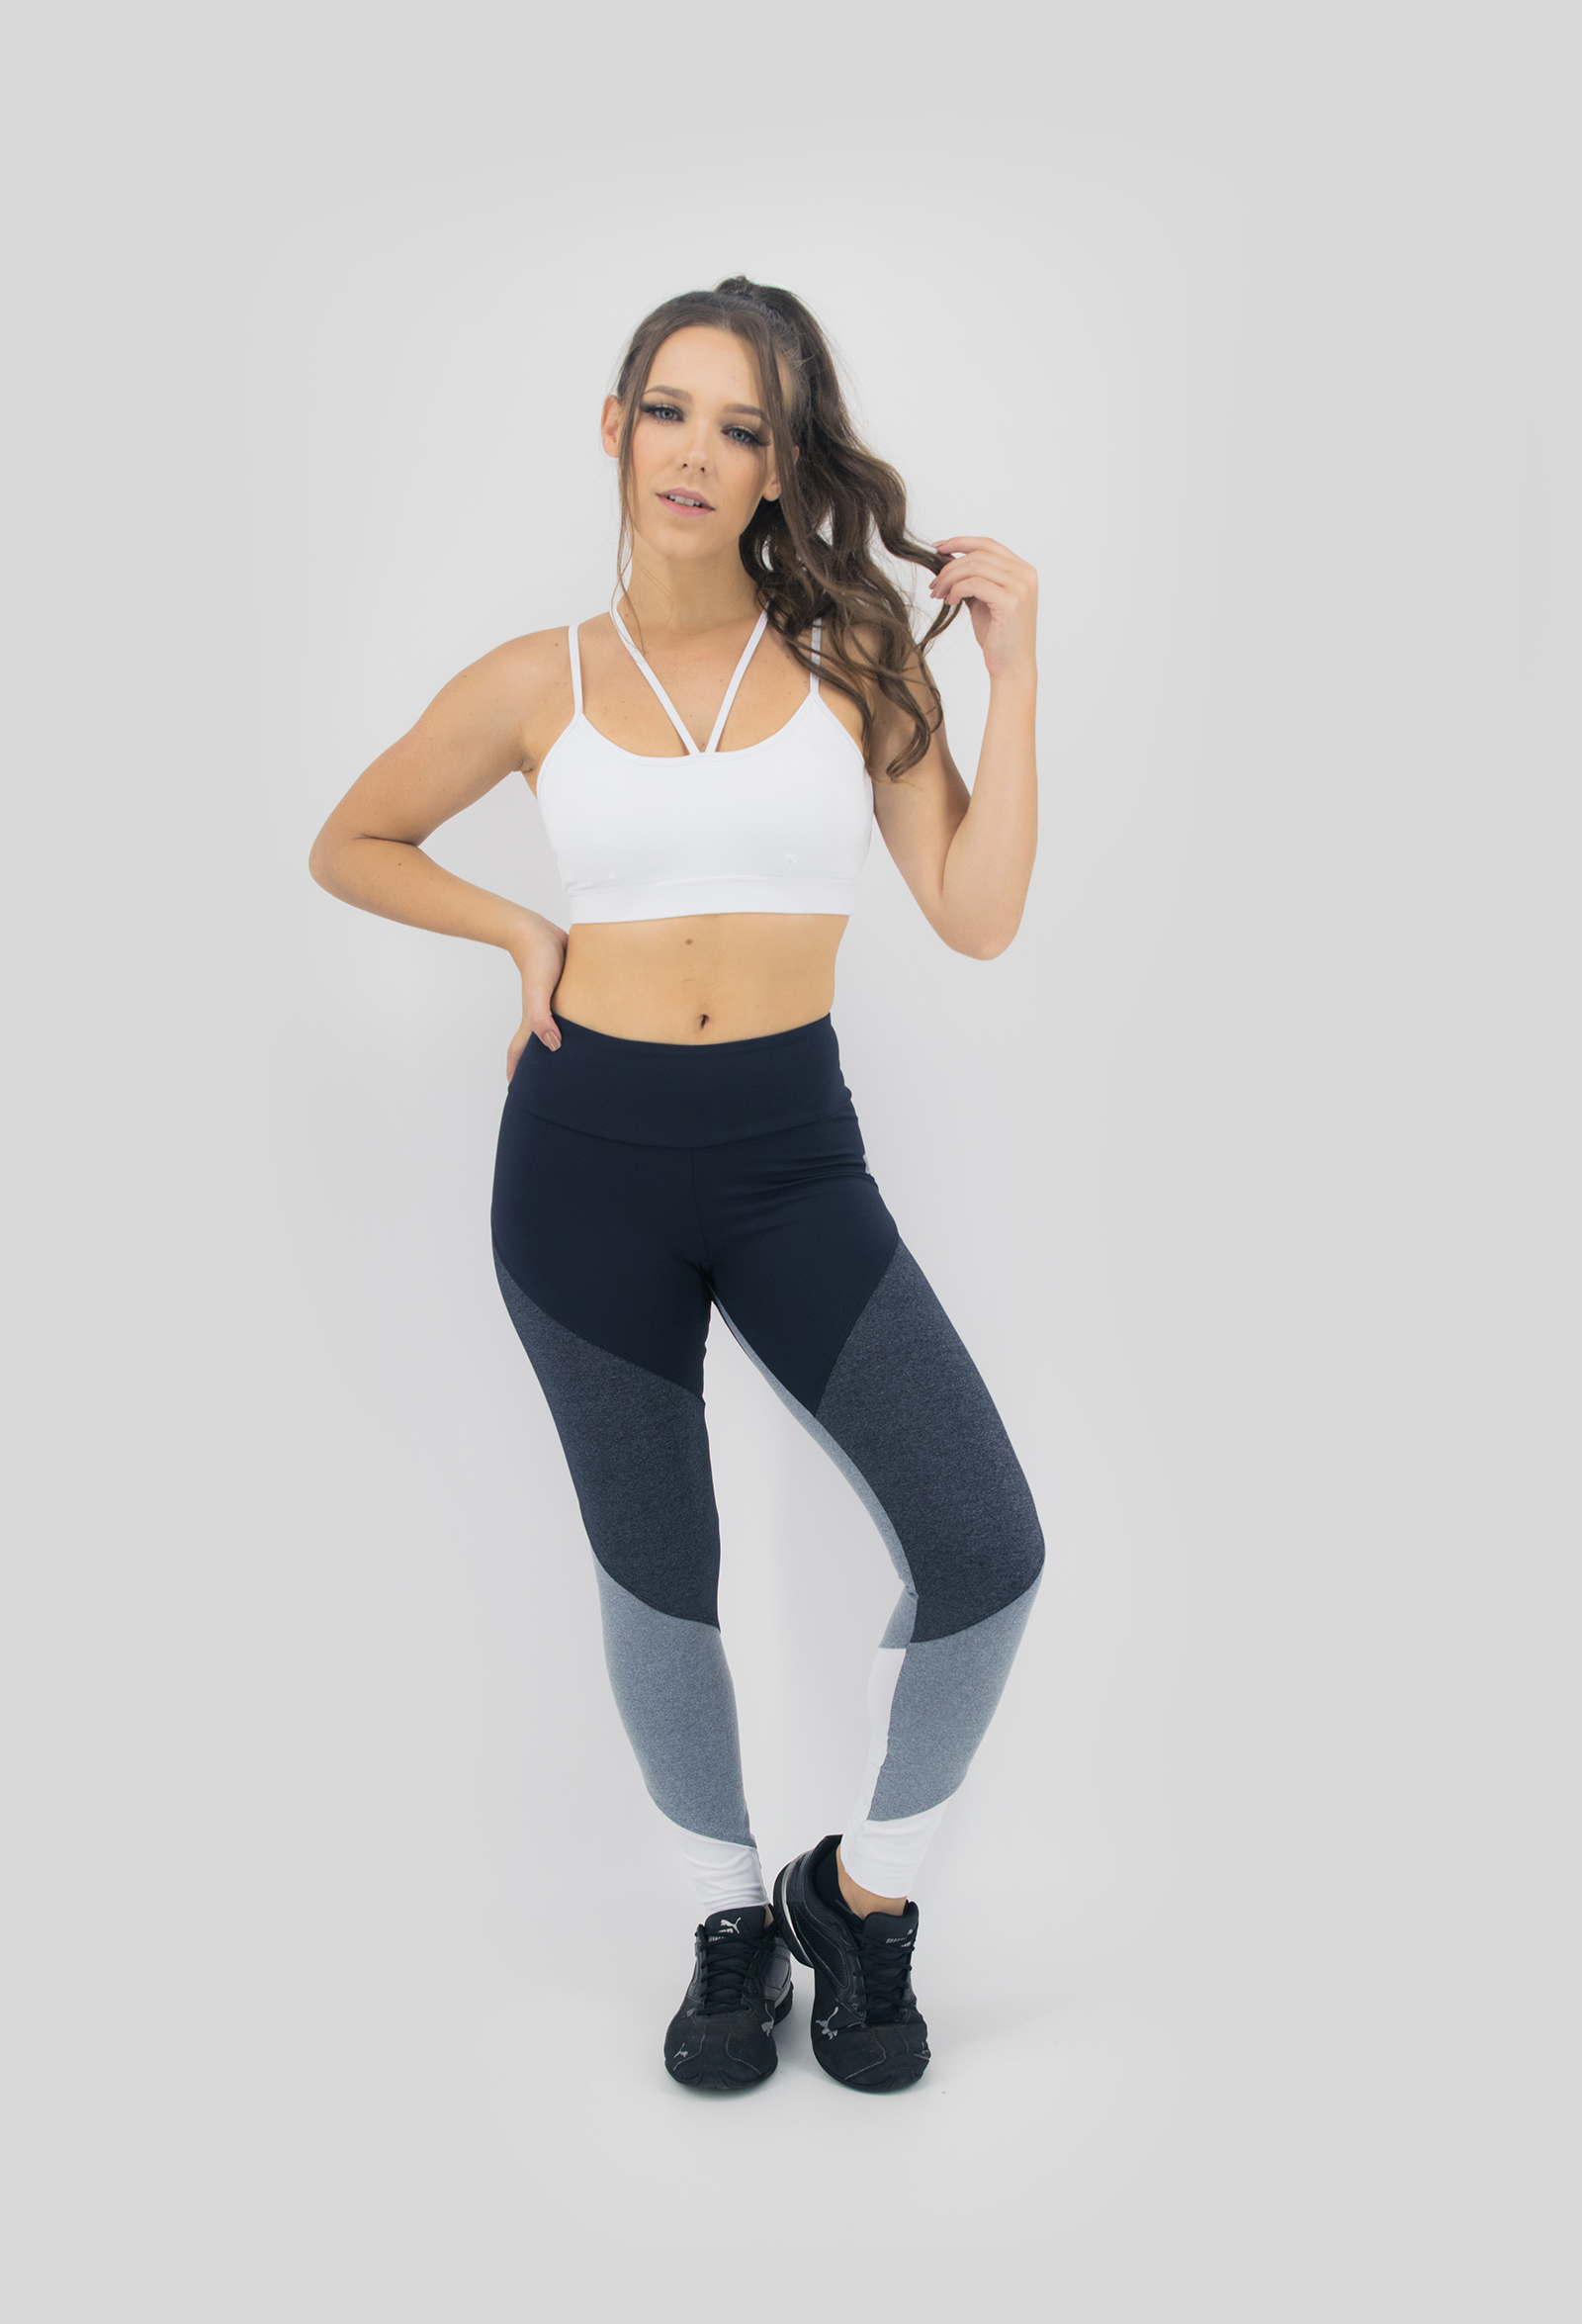 Top Modern Branco, Coleção Move Your Body - NKT Fitwear Moda Fitness